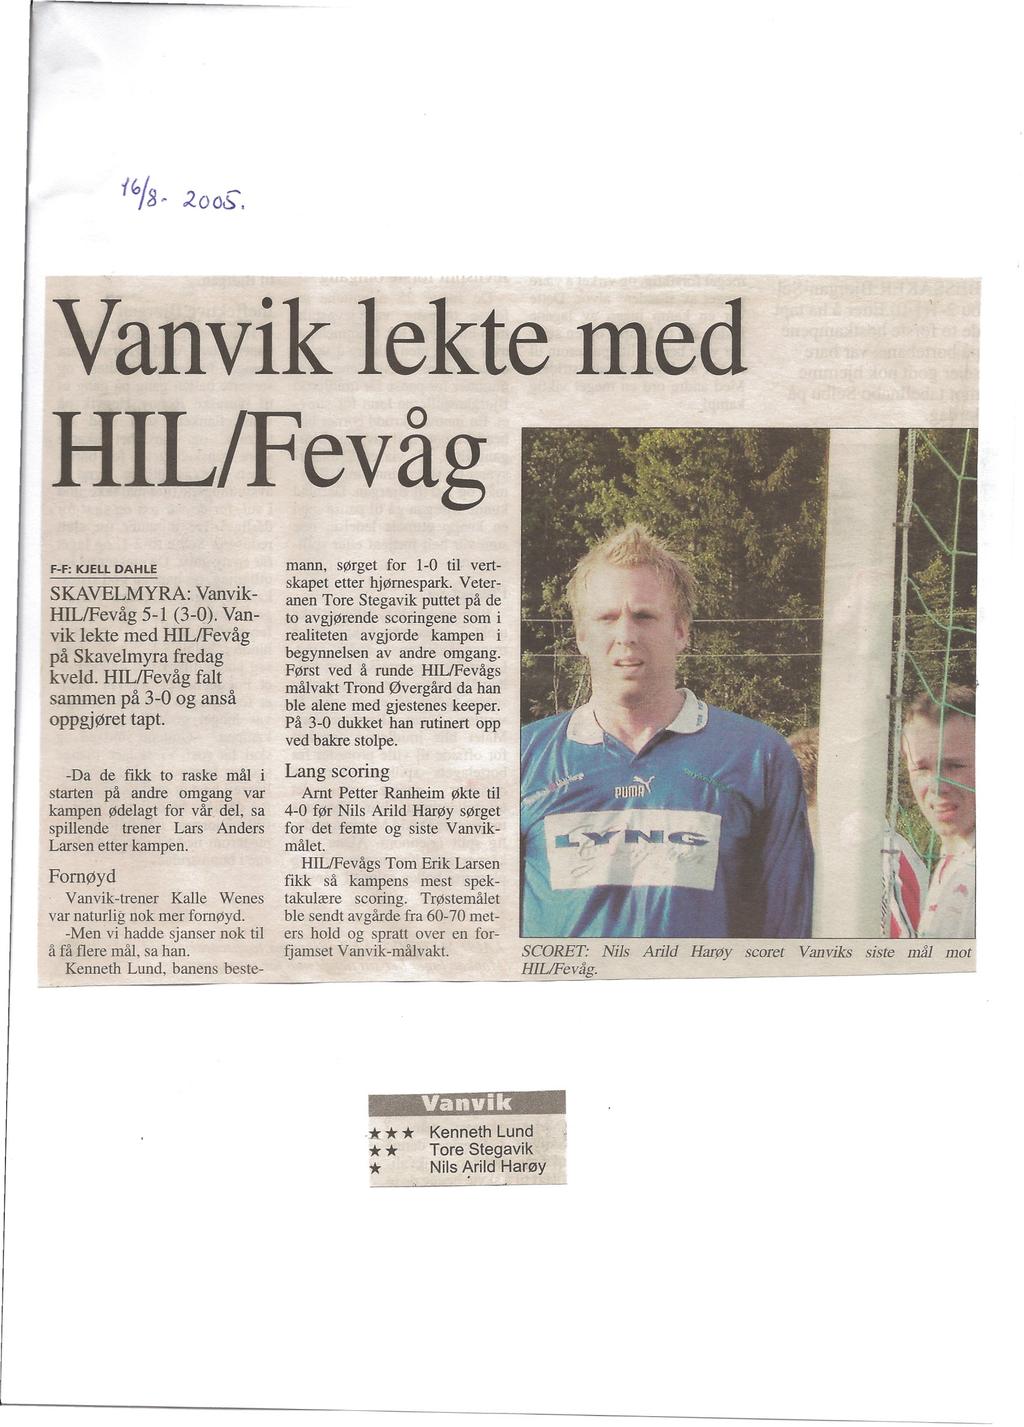 Vanvik lekte med HIL/Fevåg SKAVELMYRA: Vanvik- HILlFevåg 5-1 (3-0). Vanvik lekte med HILlFevåg på Skavelmyra fredag kveld. HILlFevåg falt sammen på 3-0 og anså oppgjøret tapt.